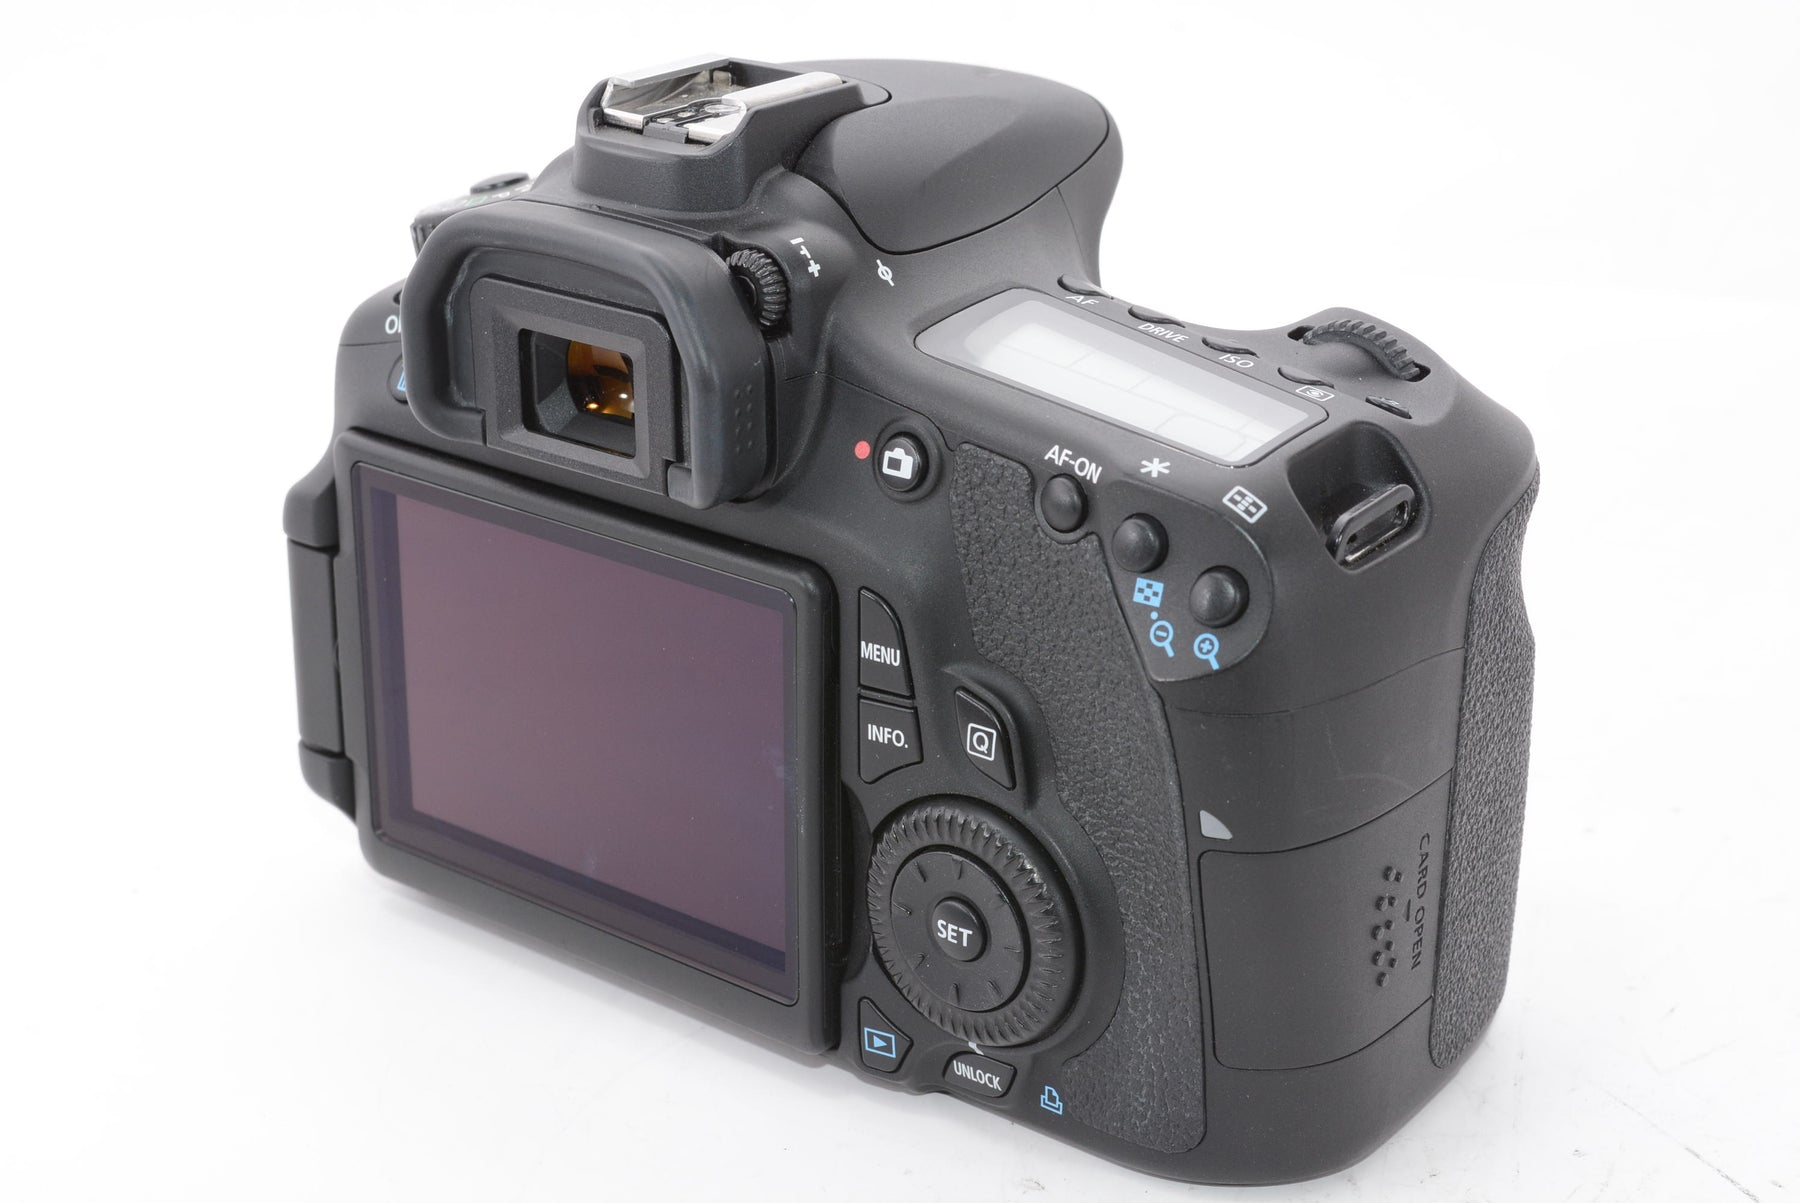 【外観特上級】Canon デジタル一眼レフカメラ EOS 60D ボディ EOS60D